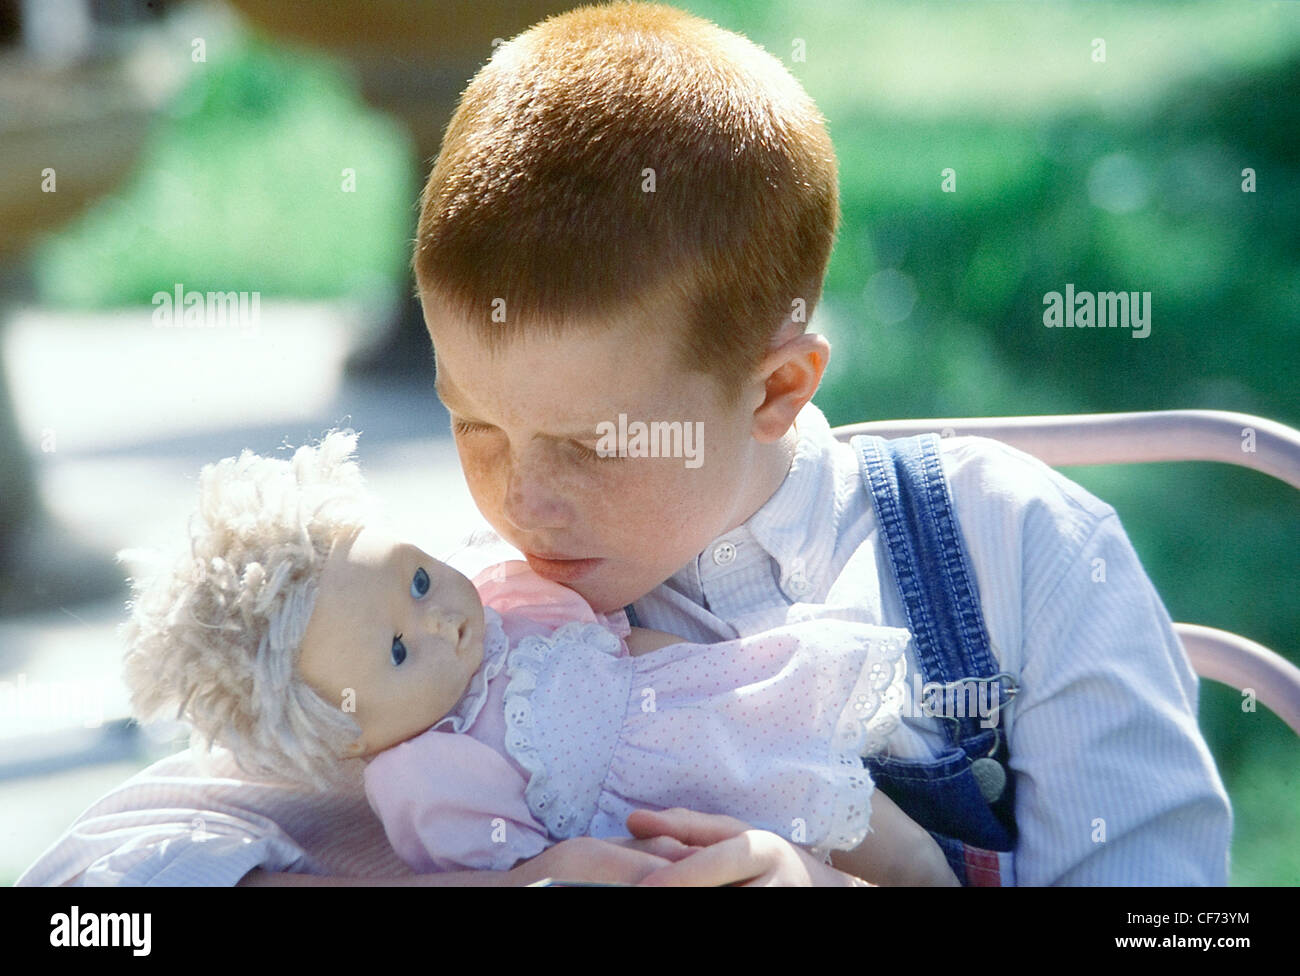 Bambino maschio con breve capelli allo zenzero, indossando un blu pallido camicia a righe e denim complessivamente, abbracciando una bambola Foto Stock